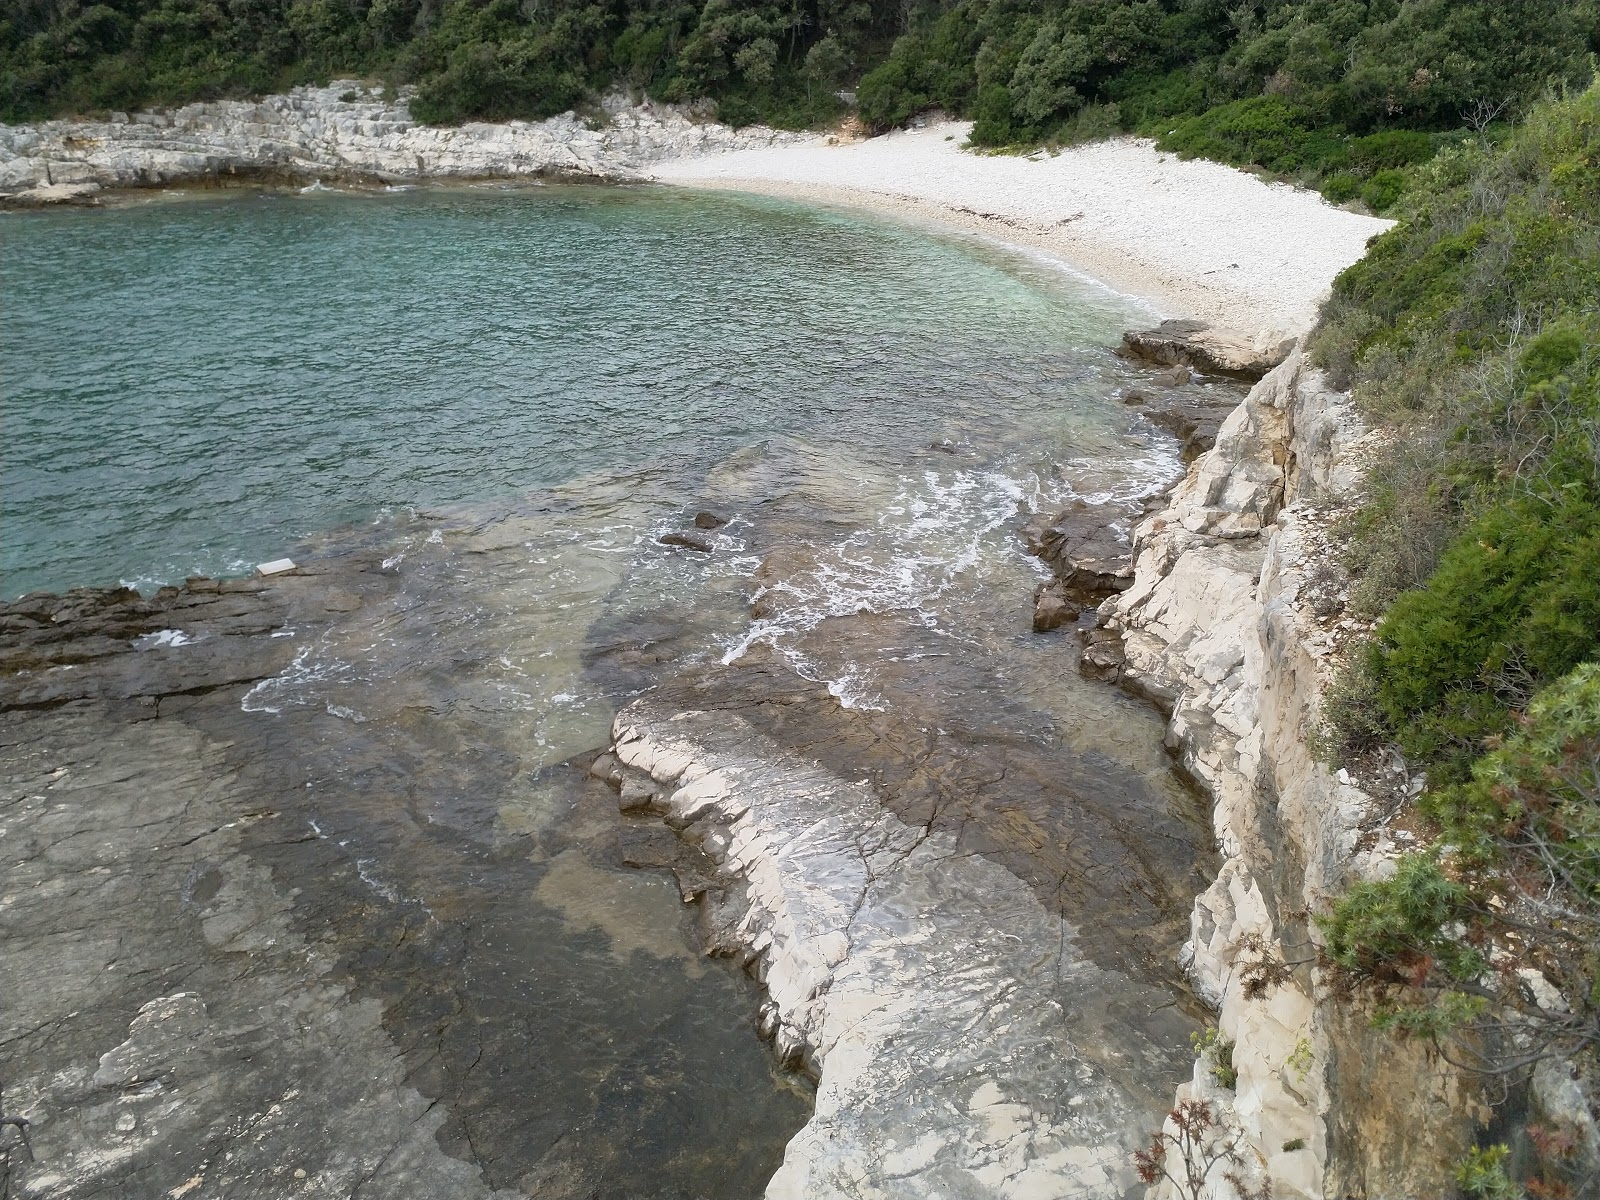 Foto di Kavran beach ubicato in zona naturale